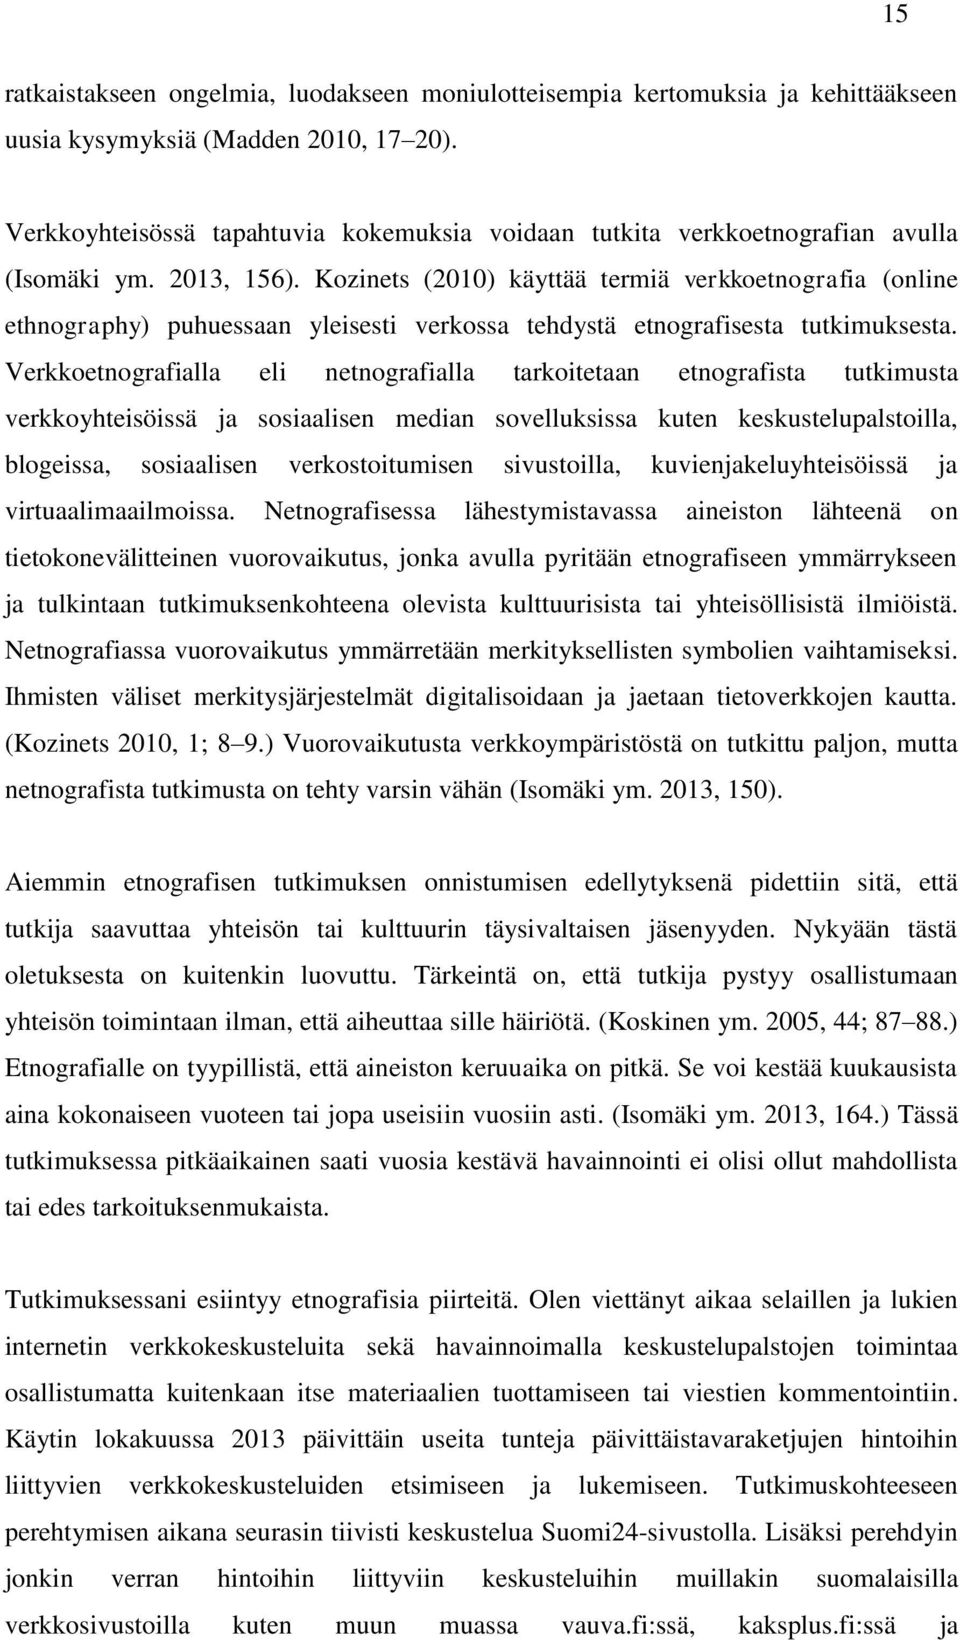 Kozinets (2010) käyttää termiä verkkoetnografia (online ethnography) puhuessaan yleisesti verkossa tehdystä etnografisesta tutkimuksesta.